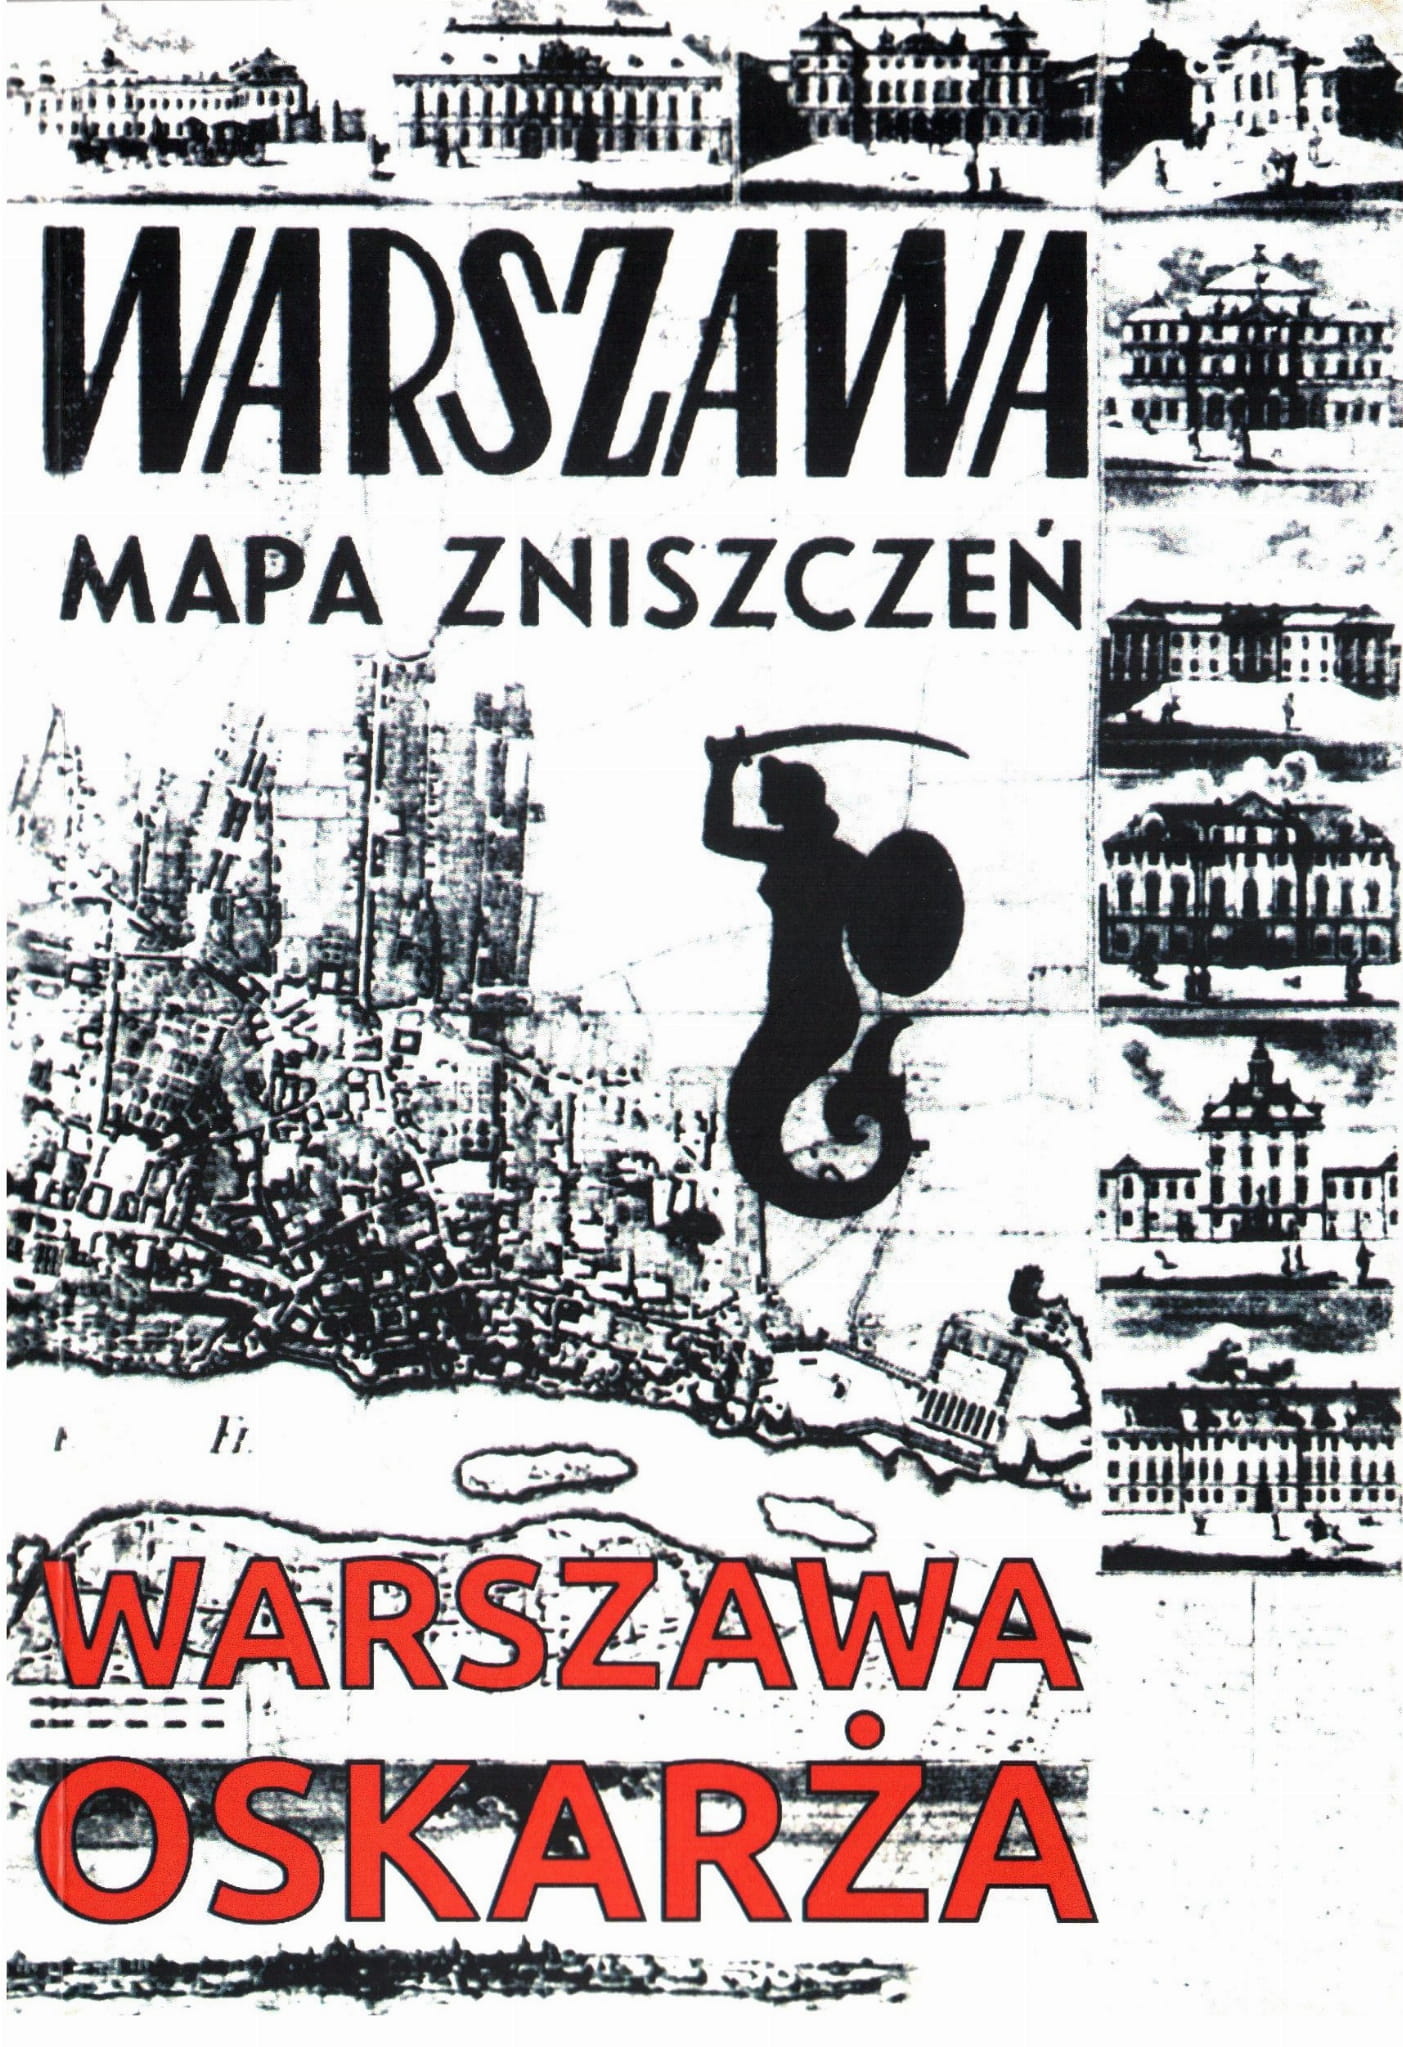 Warszawa oskarża 1945 + mapa zniszczeń wojennych 1949 reprint (opr.zbiorowe)